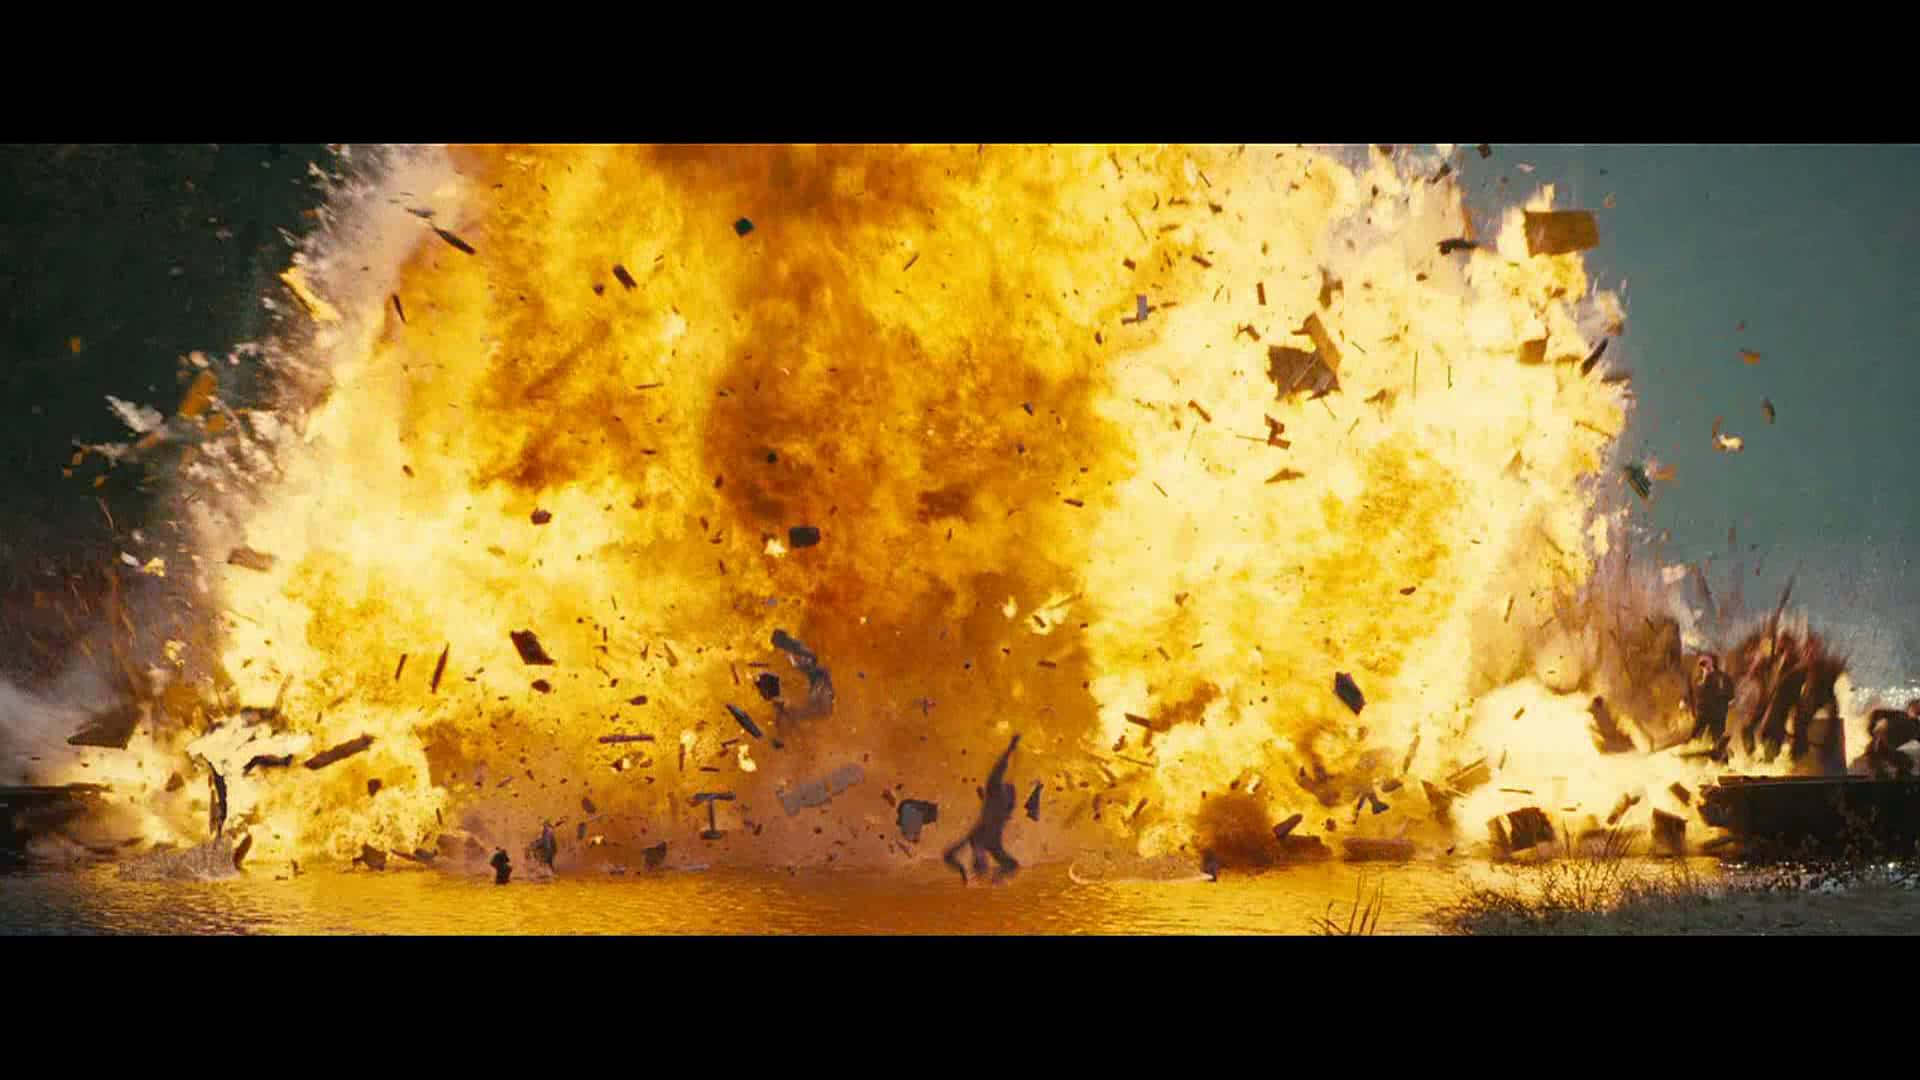 Riesigeractionfilm-explosions-hintergrund